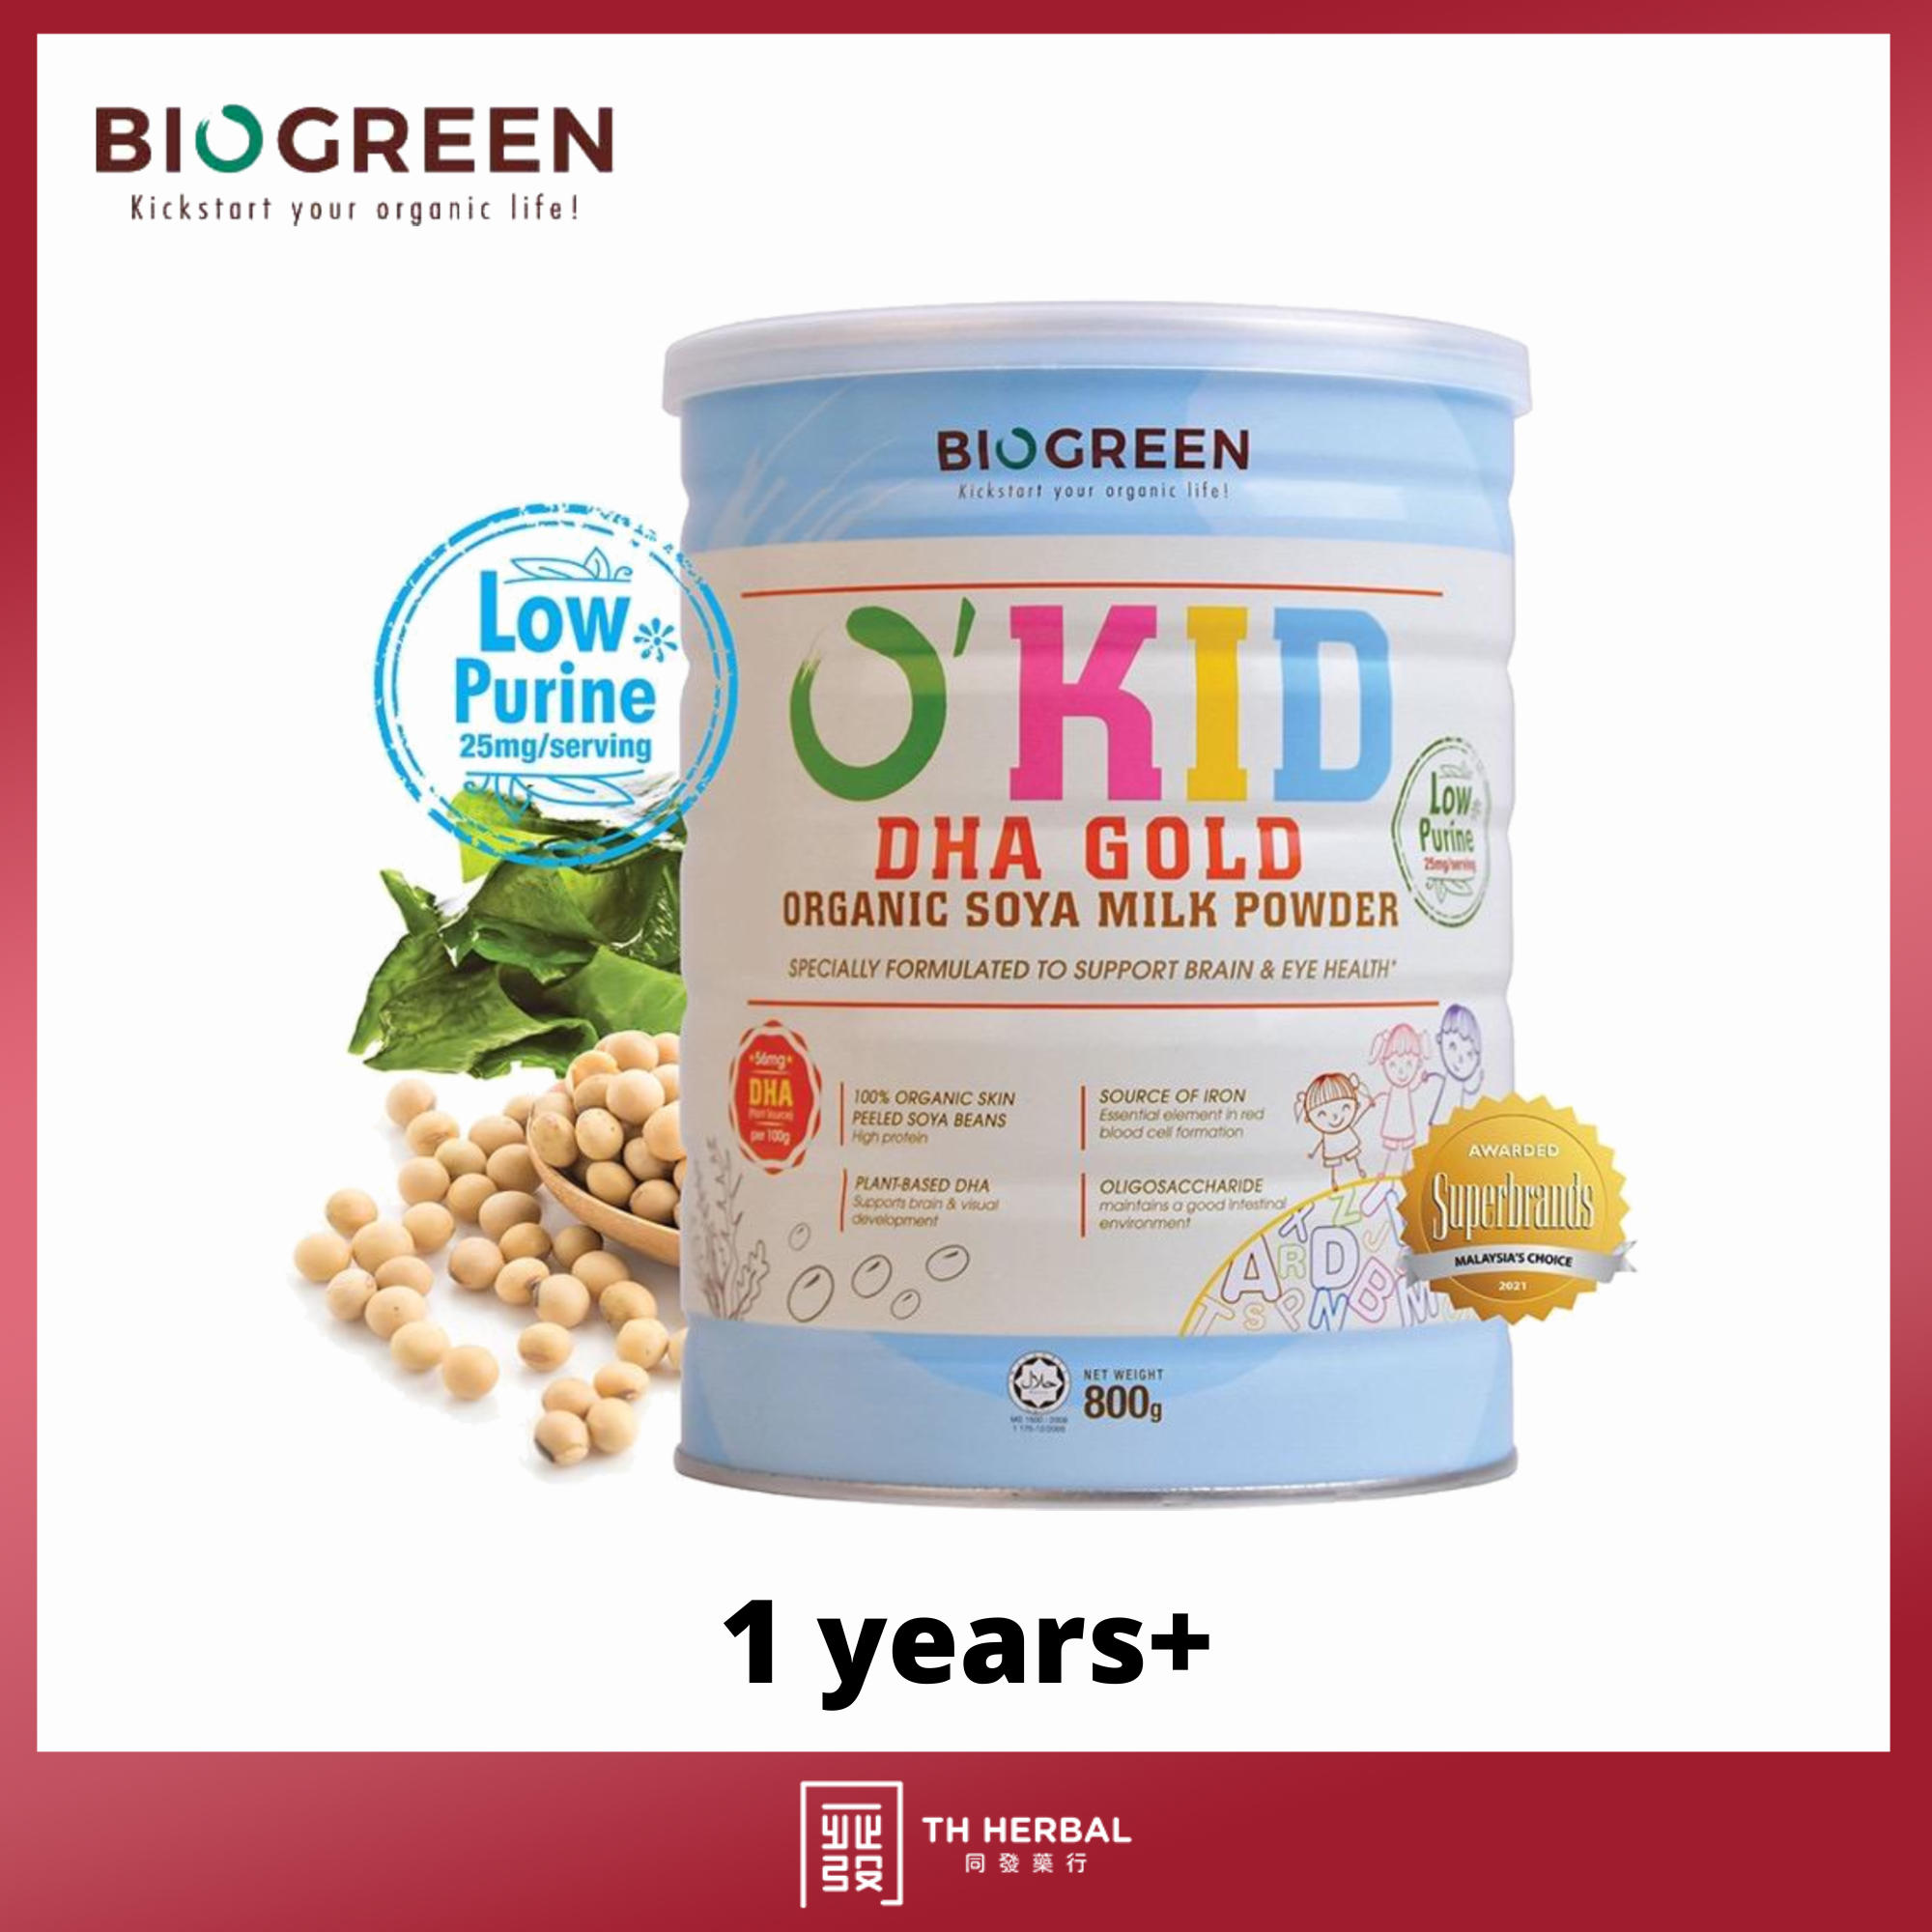 DHA Gold organic soya milk powder